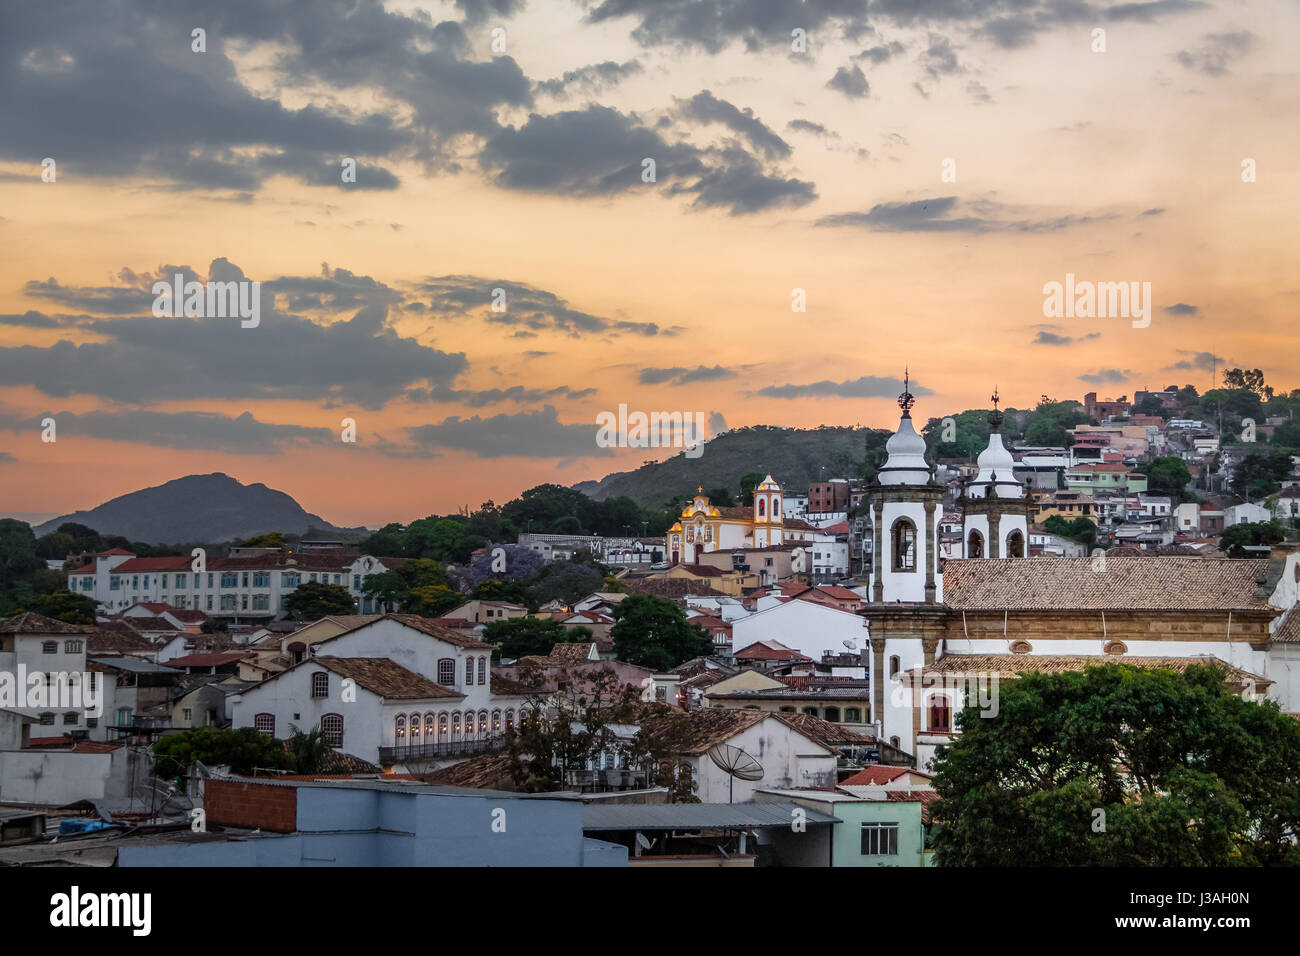 Luftaufnahme von Sao Joao del Rei bei Sonnenuntergang - Sao Joao del Rei, Minas Gerais, Brasilien Stockfoto